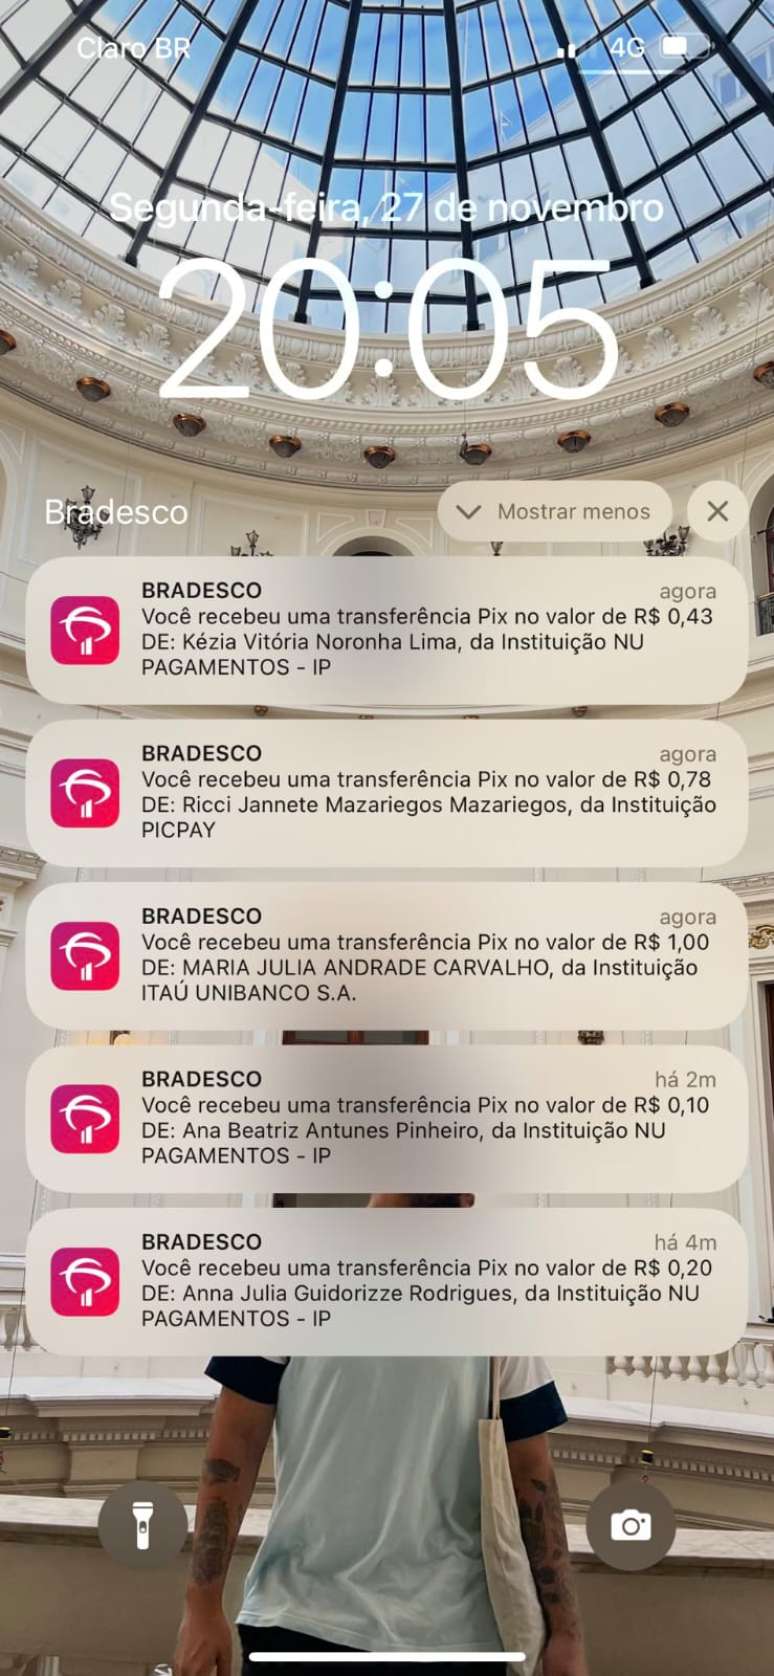 Luan Moraes publicou nas redes sociais print da tela do celular com os Pix recebidos. 